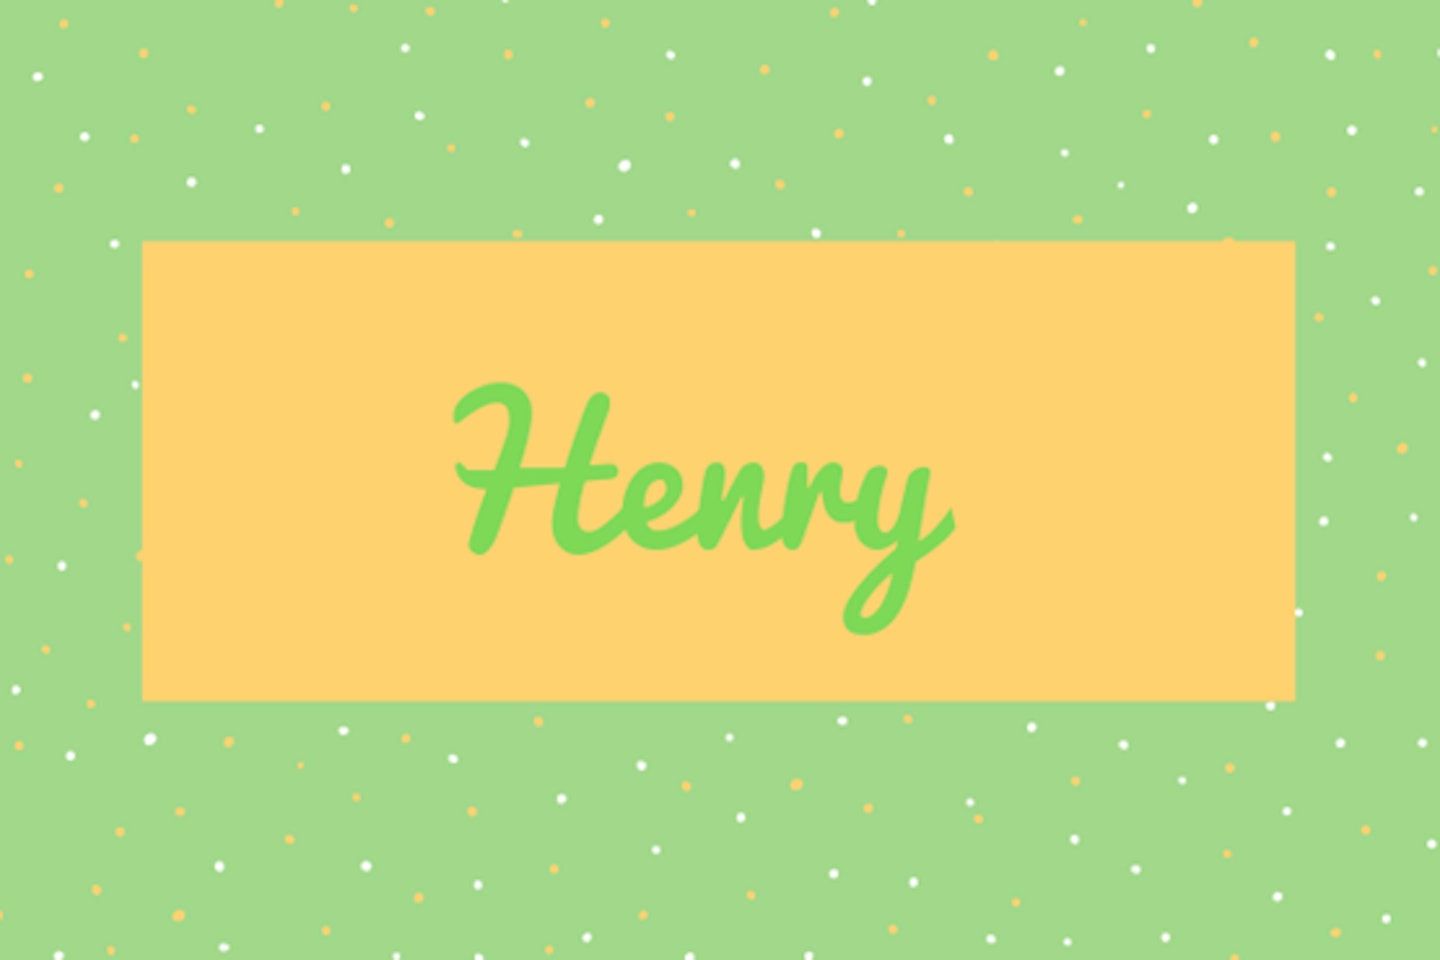 18) Henry